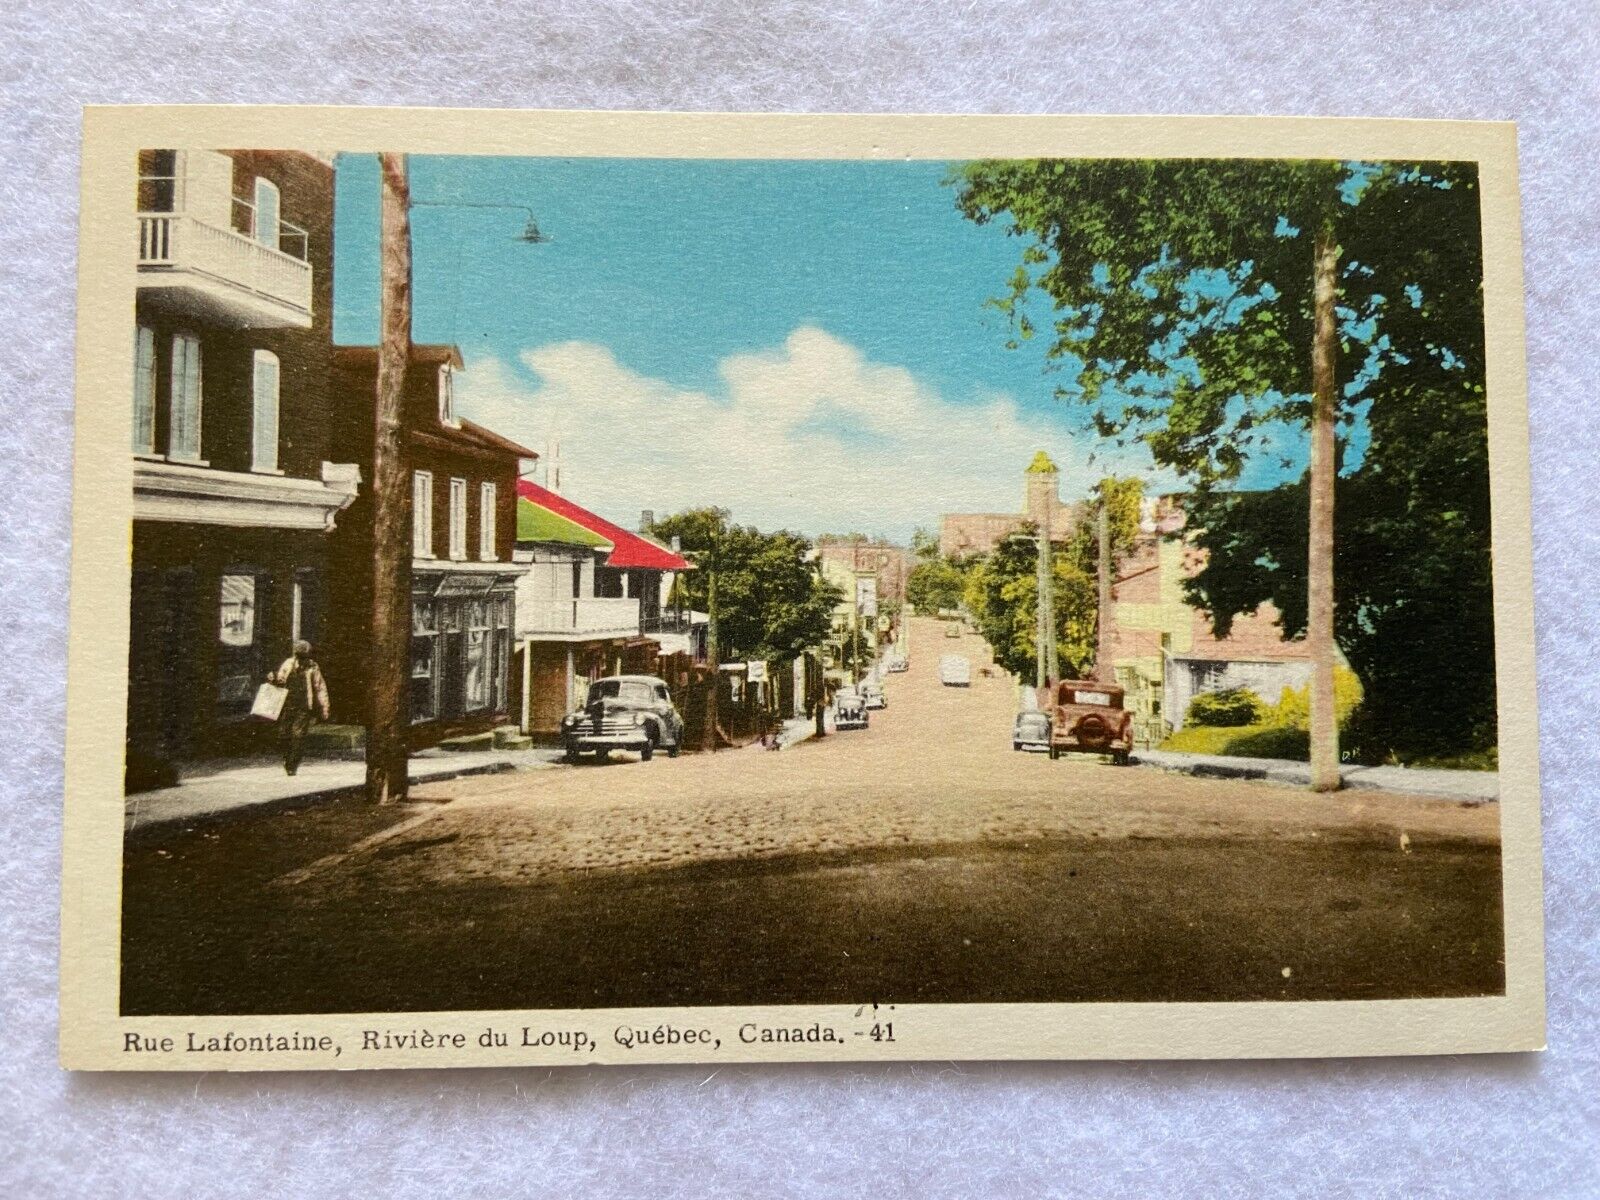 Rue Lafontaine, Riviere du Loup, Quebec Canada Vintage Postcard